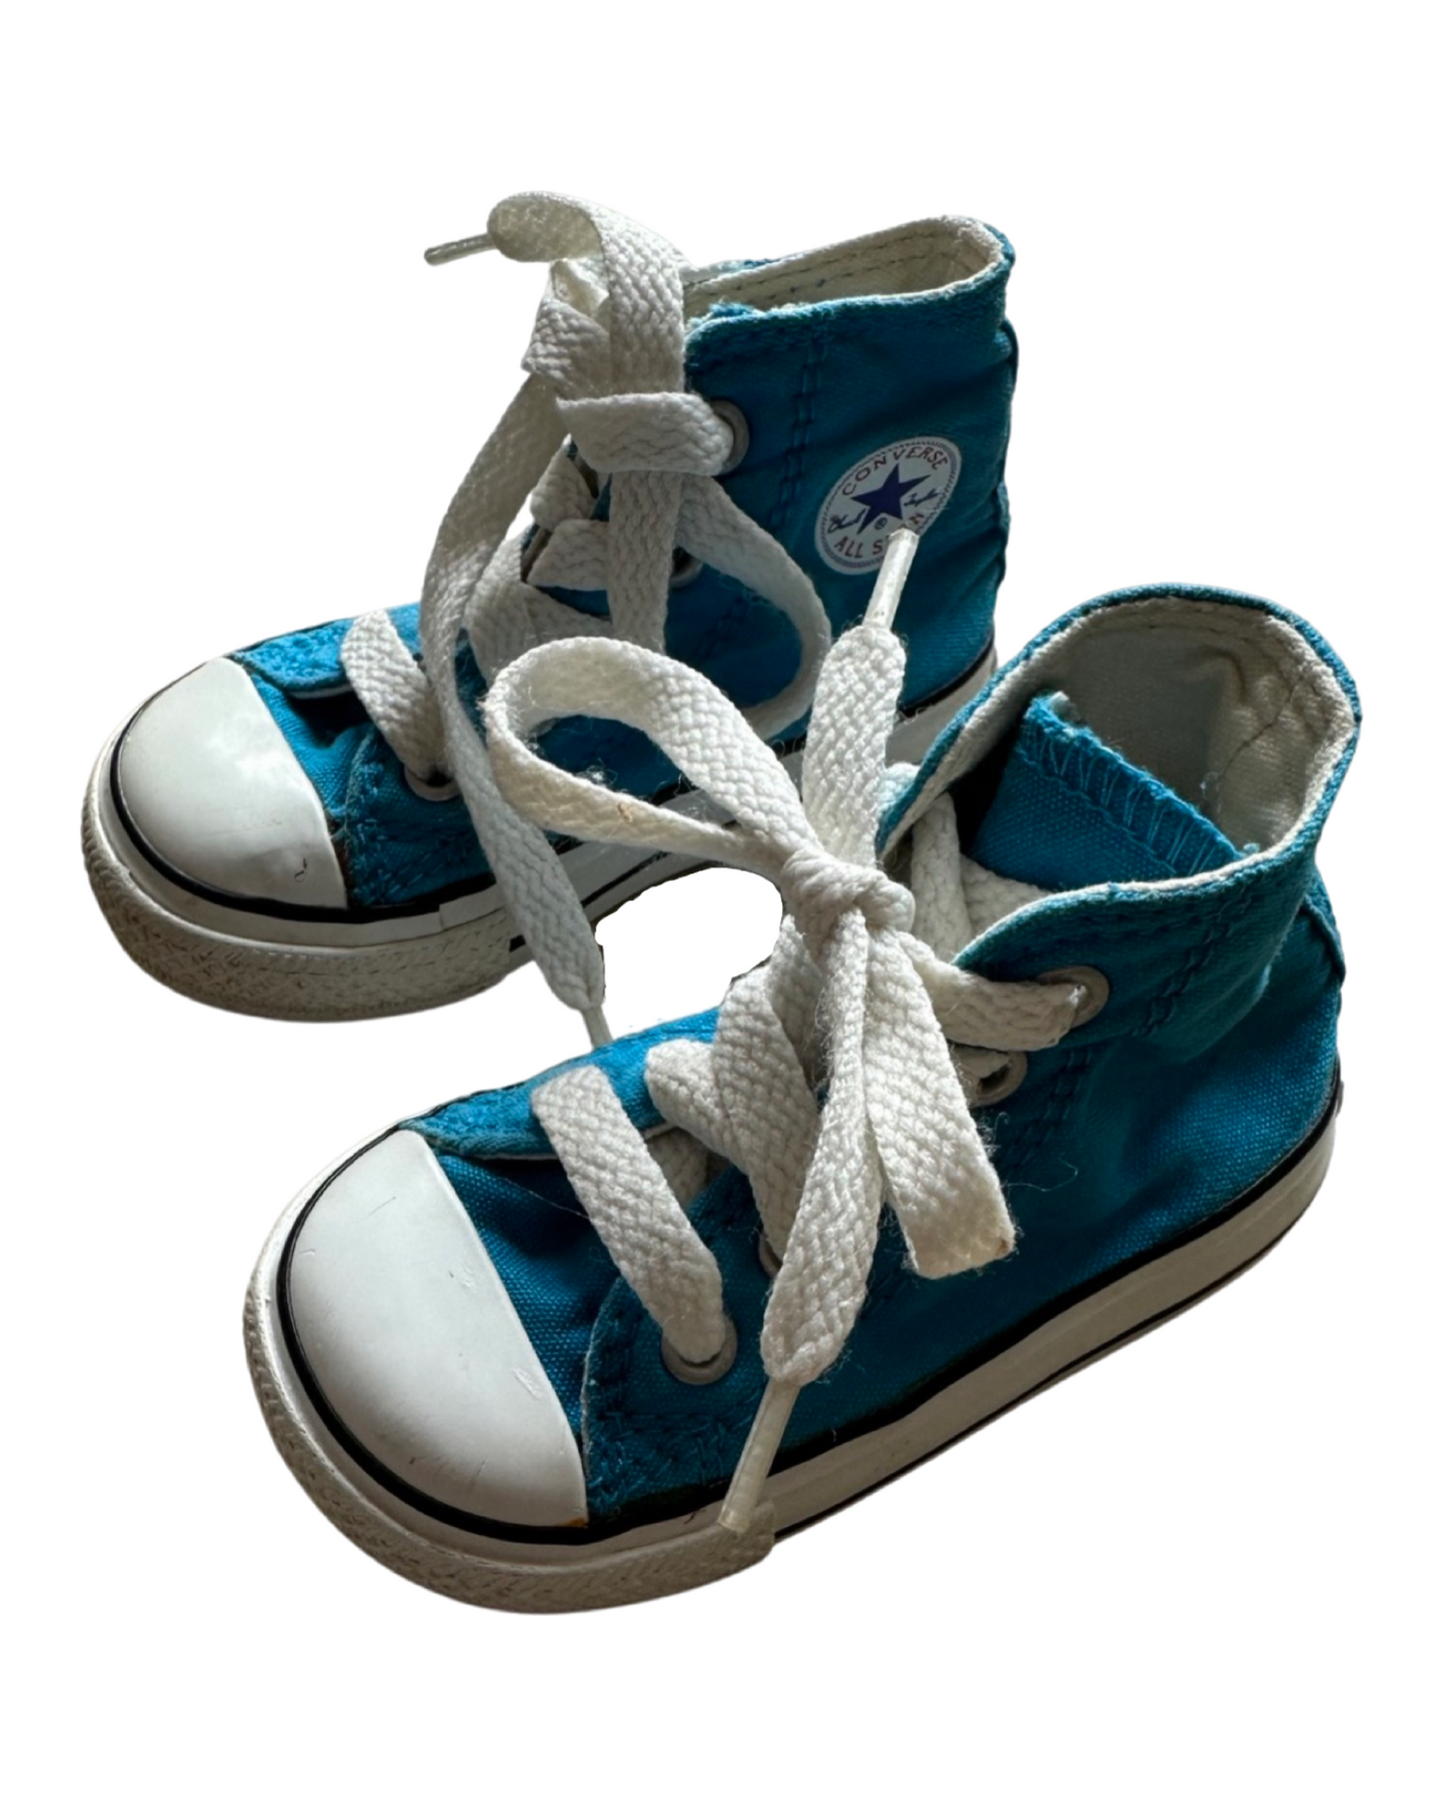 Converse Chuck Taylor infant hi tops in bright blue (UK4/EU20)